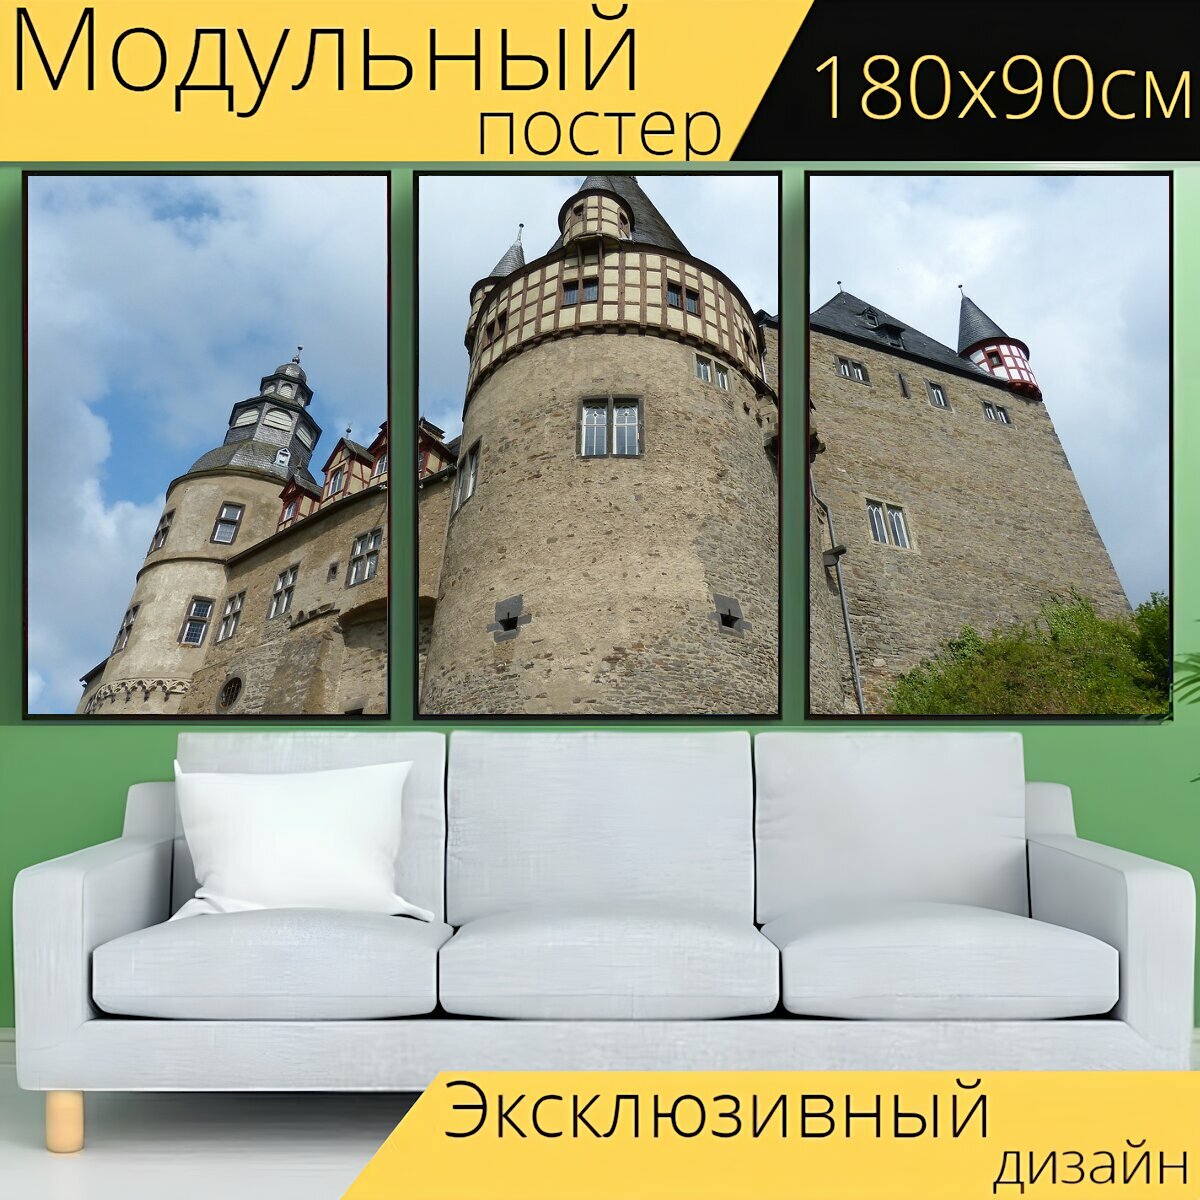 Модульный постер "Замок, мозель, архитектура" 180 x 90 см. для интерьера